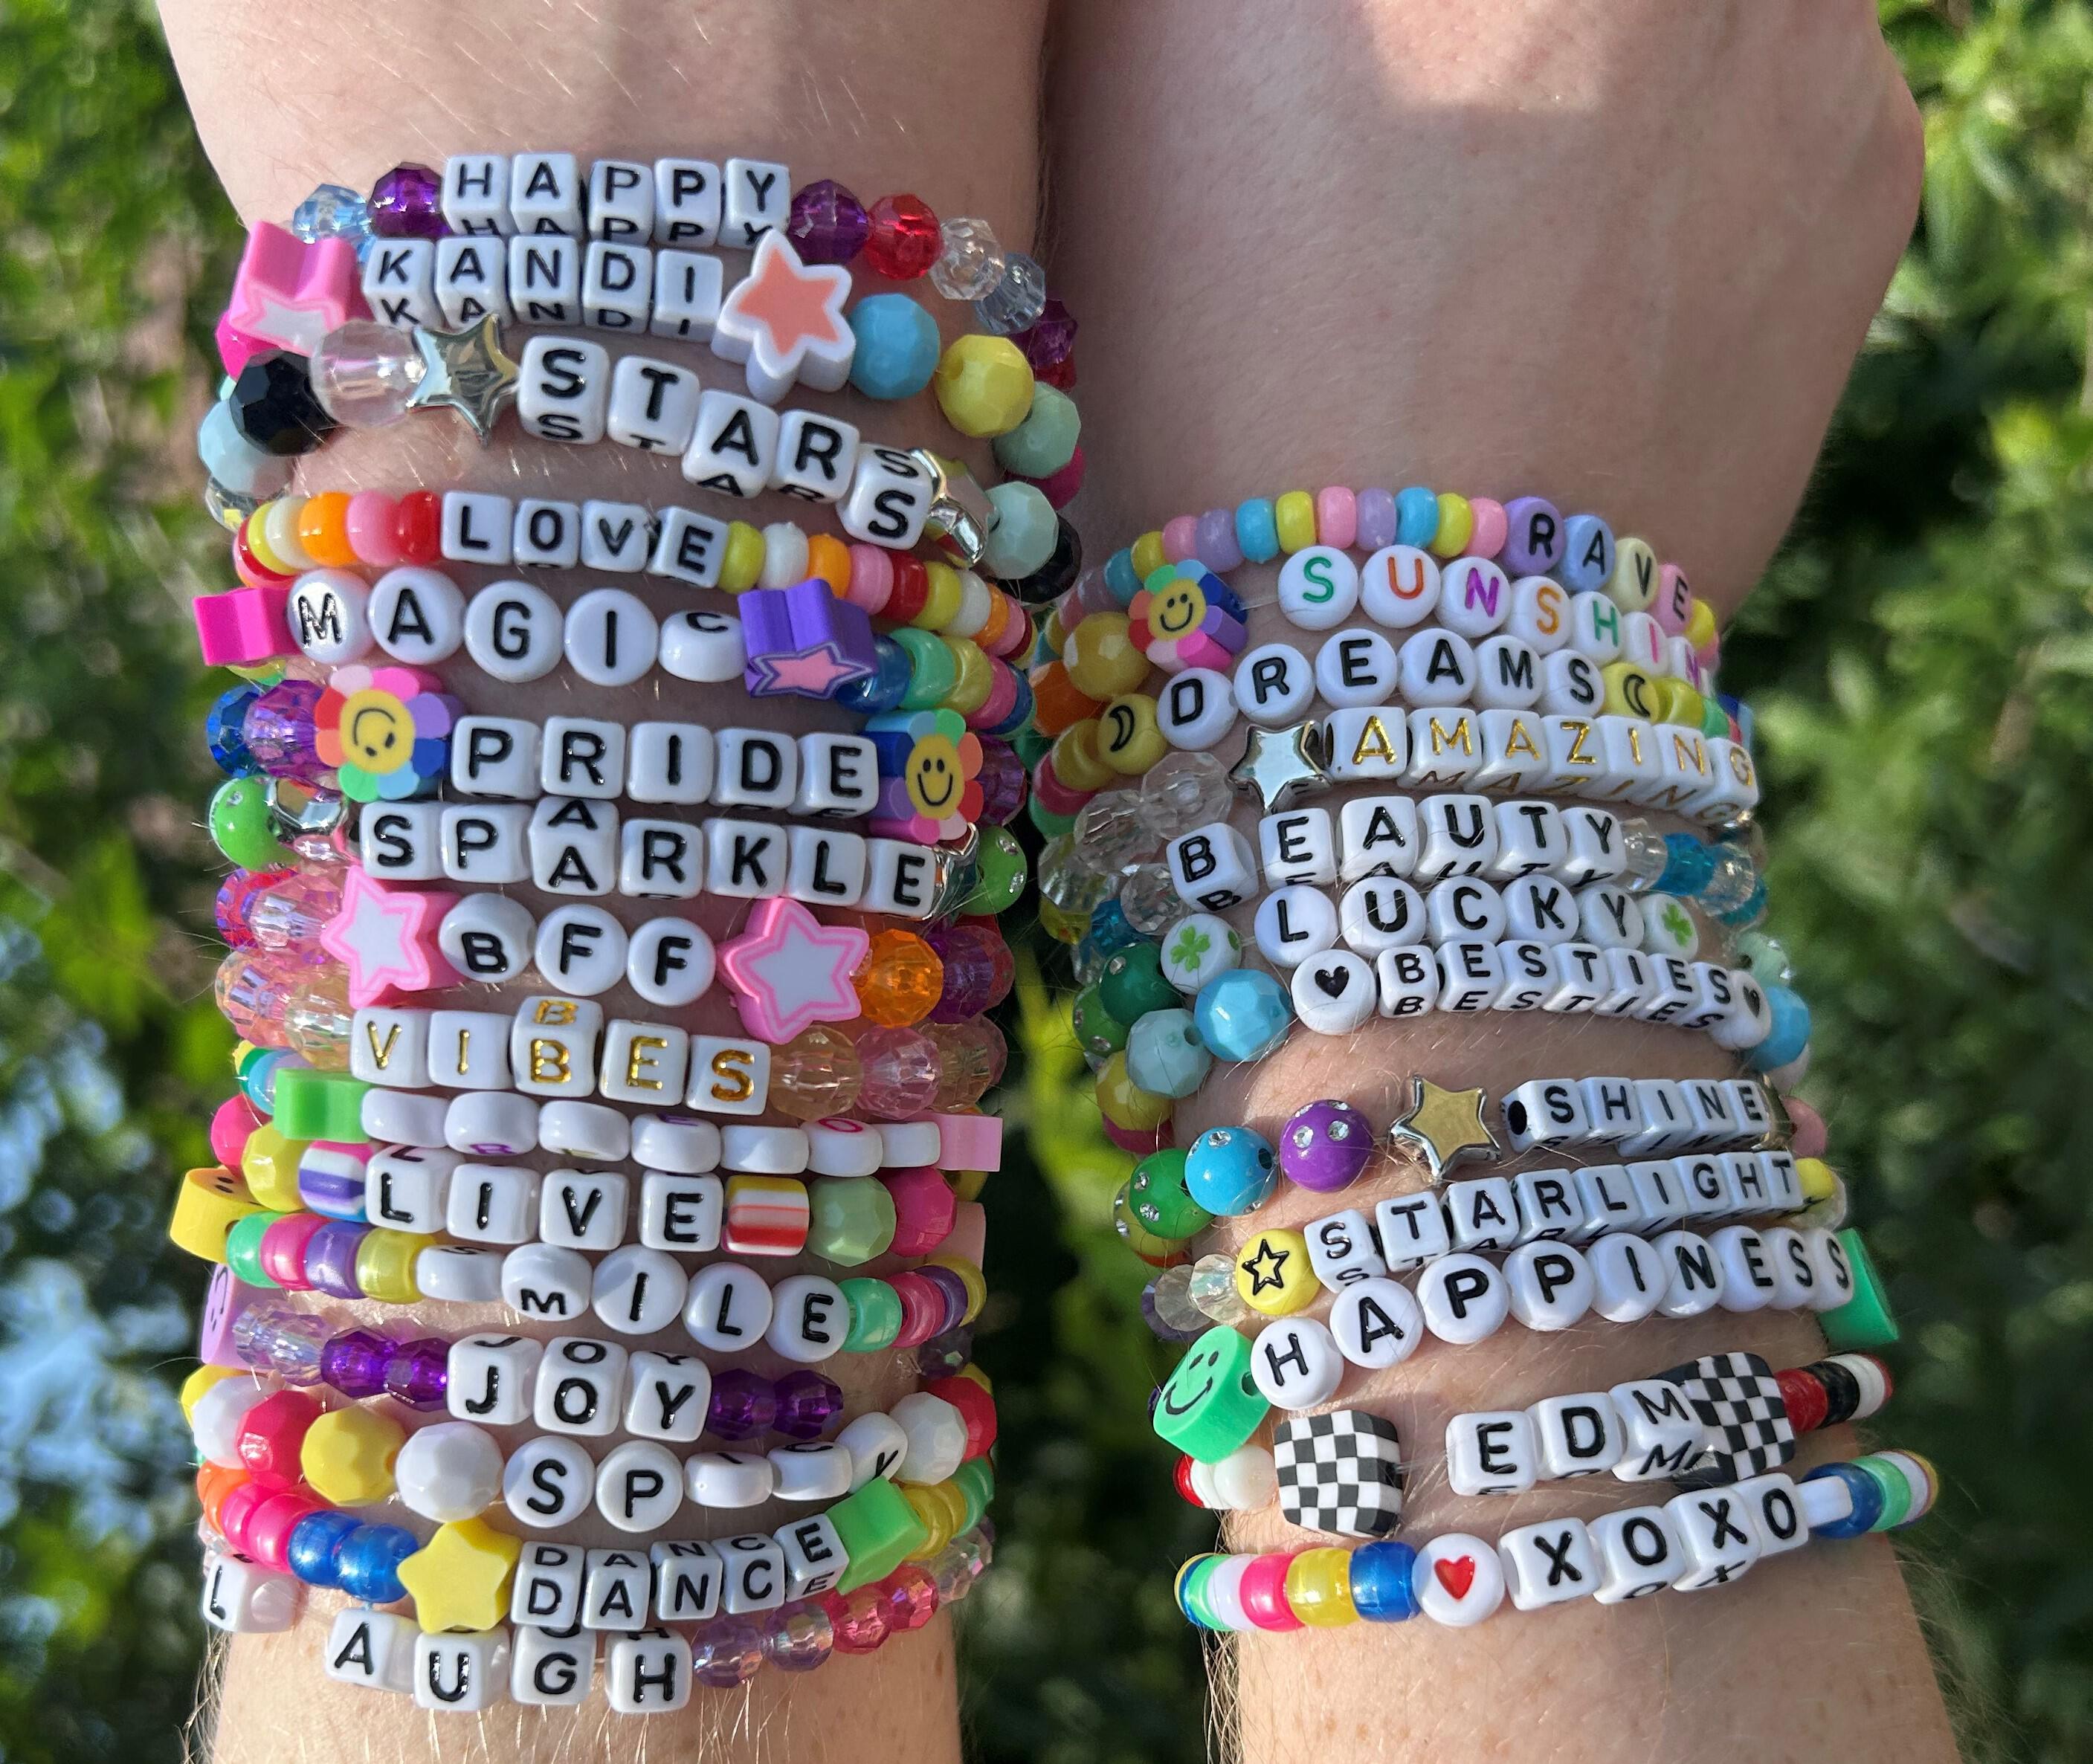 Jewelry :: Kandi bracelets lot of 5-100 friendship bracelets rave